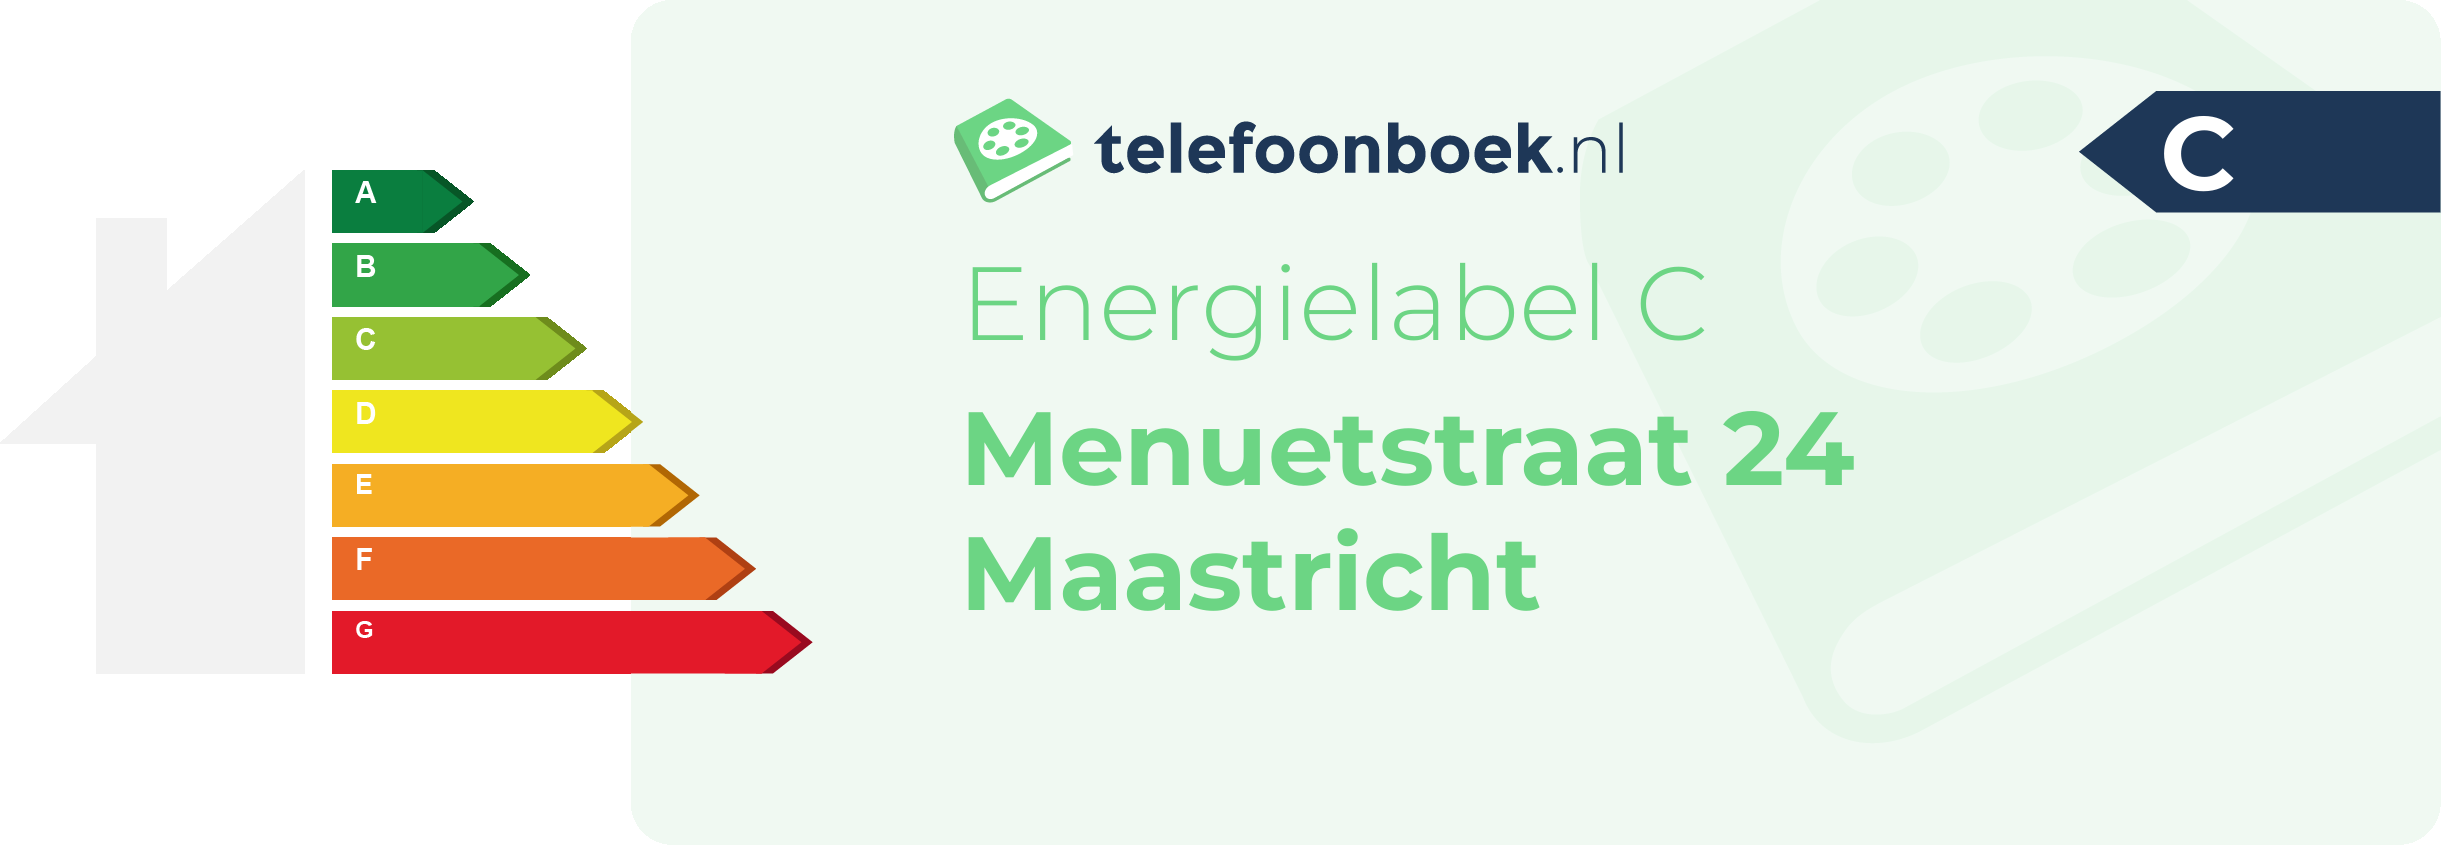 Energielabel Menuetstraat 24 Maastricht